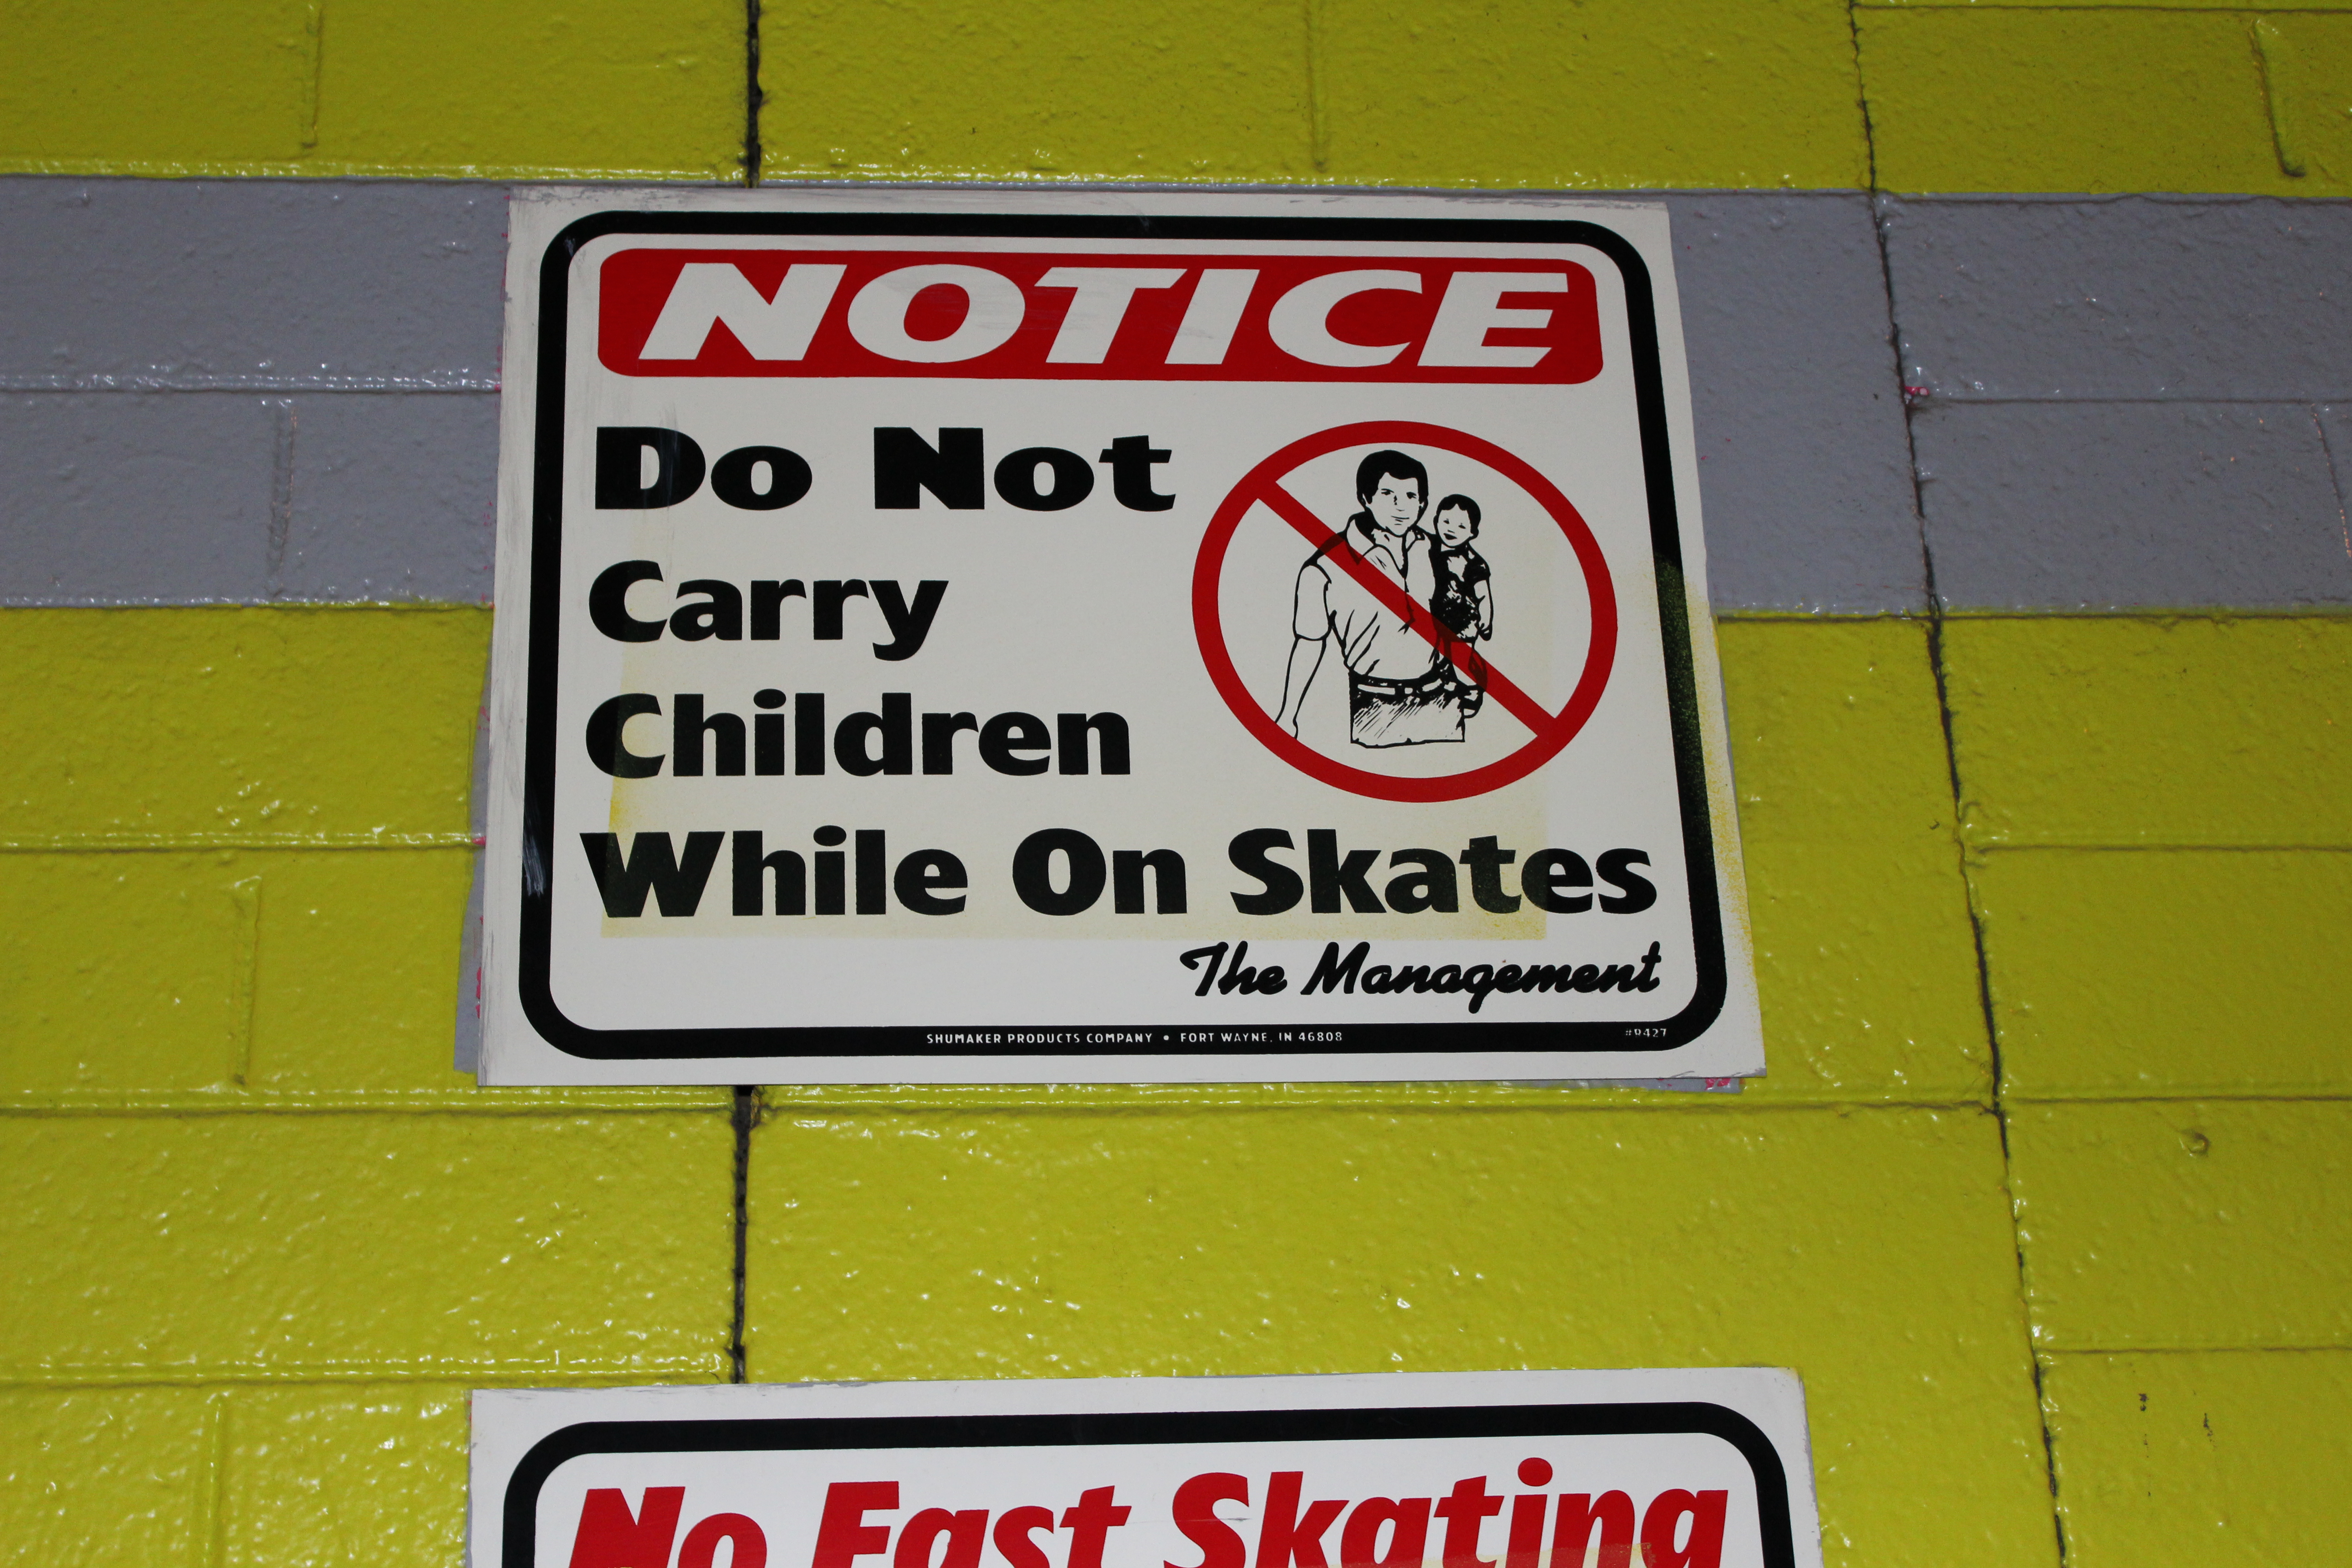 Skates in lying around in rink aisles is dangerous!